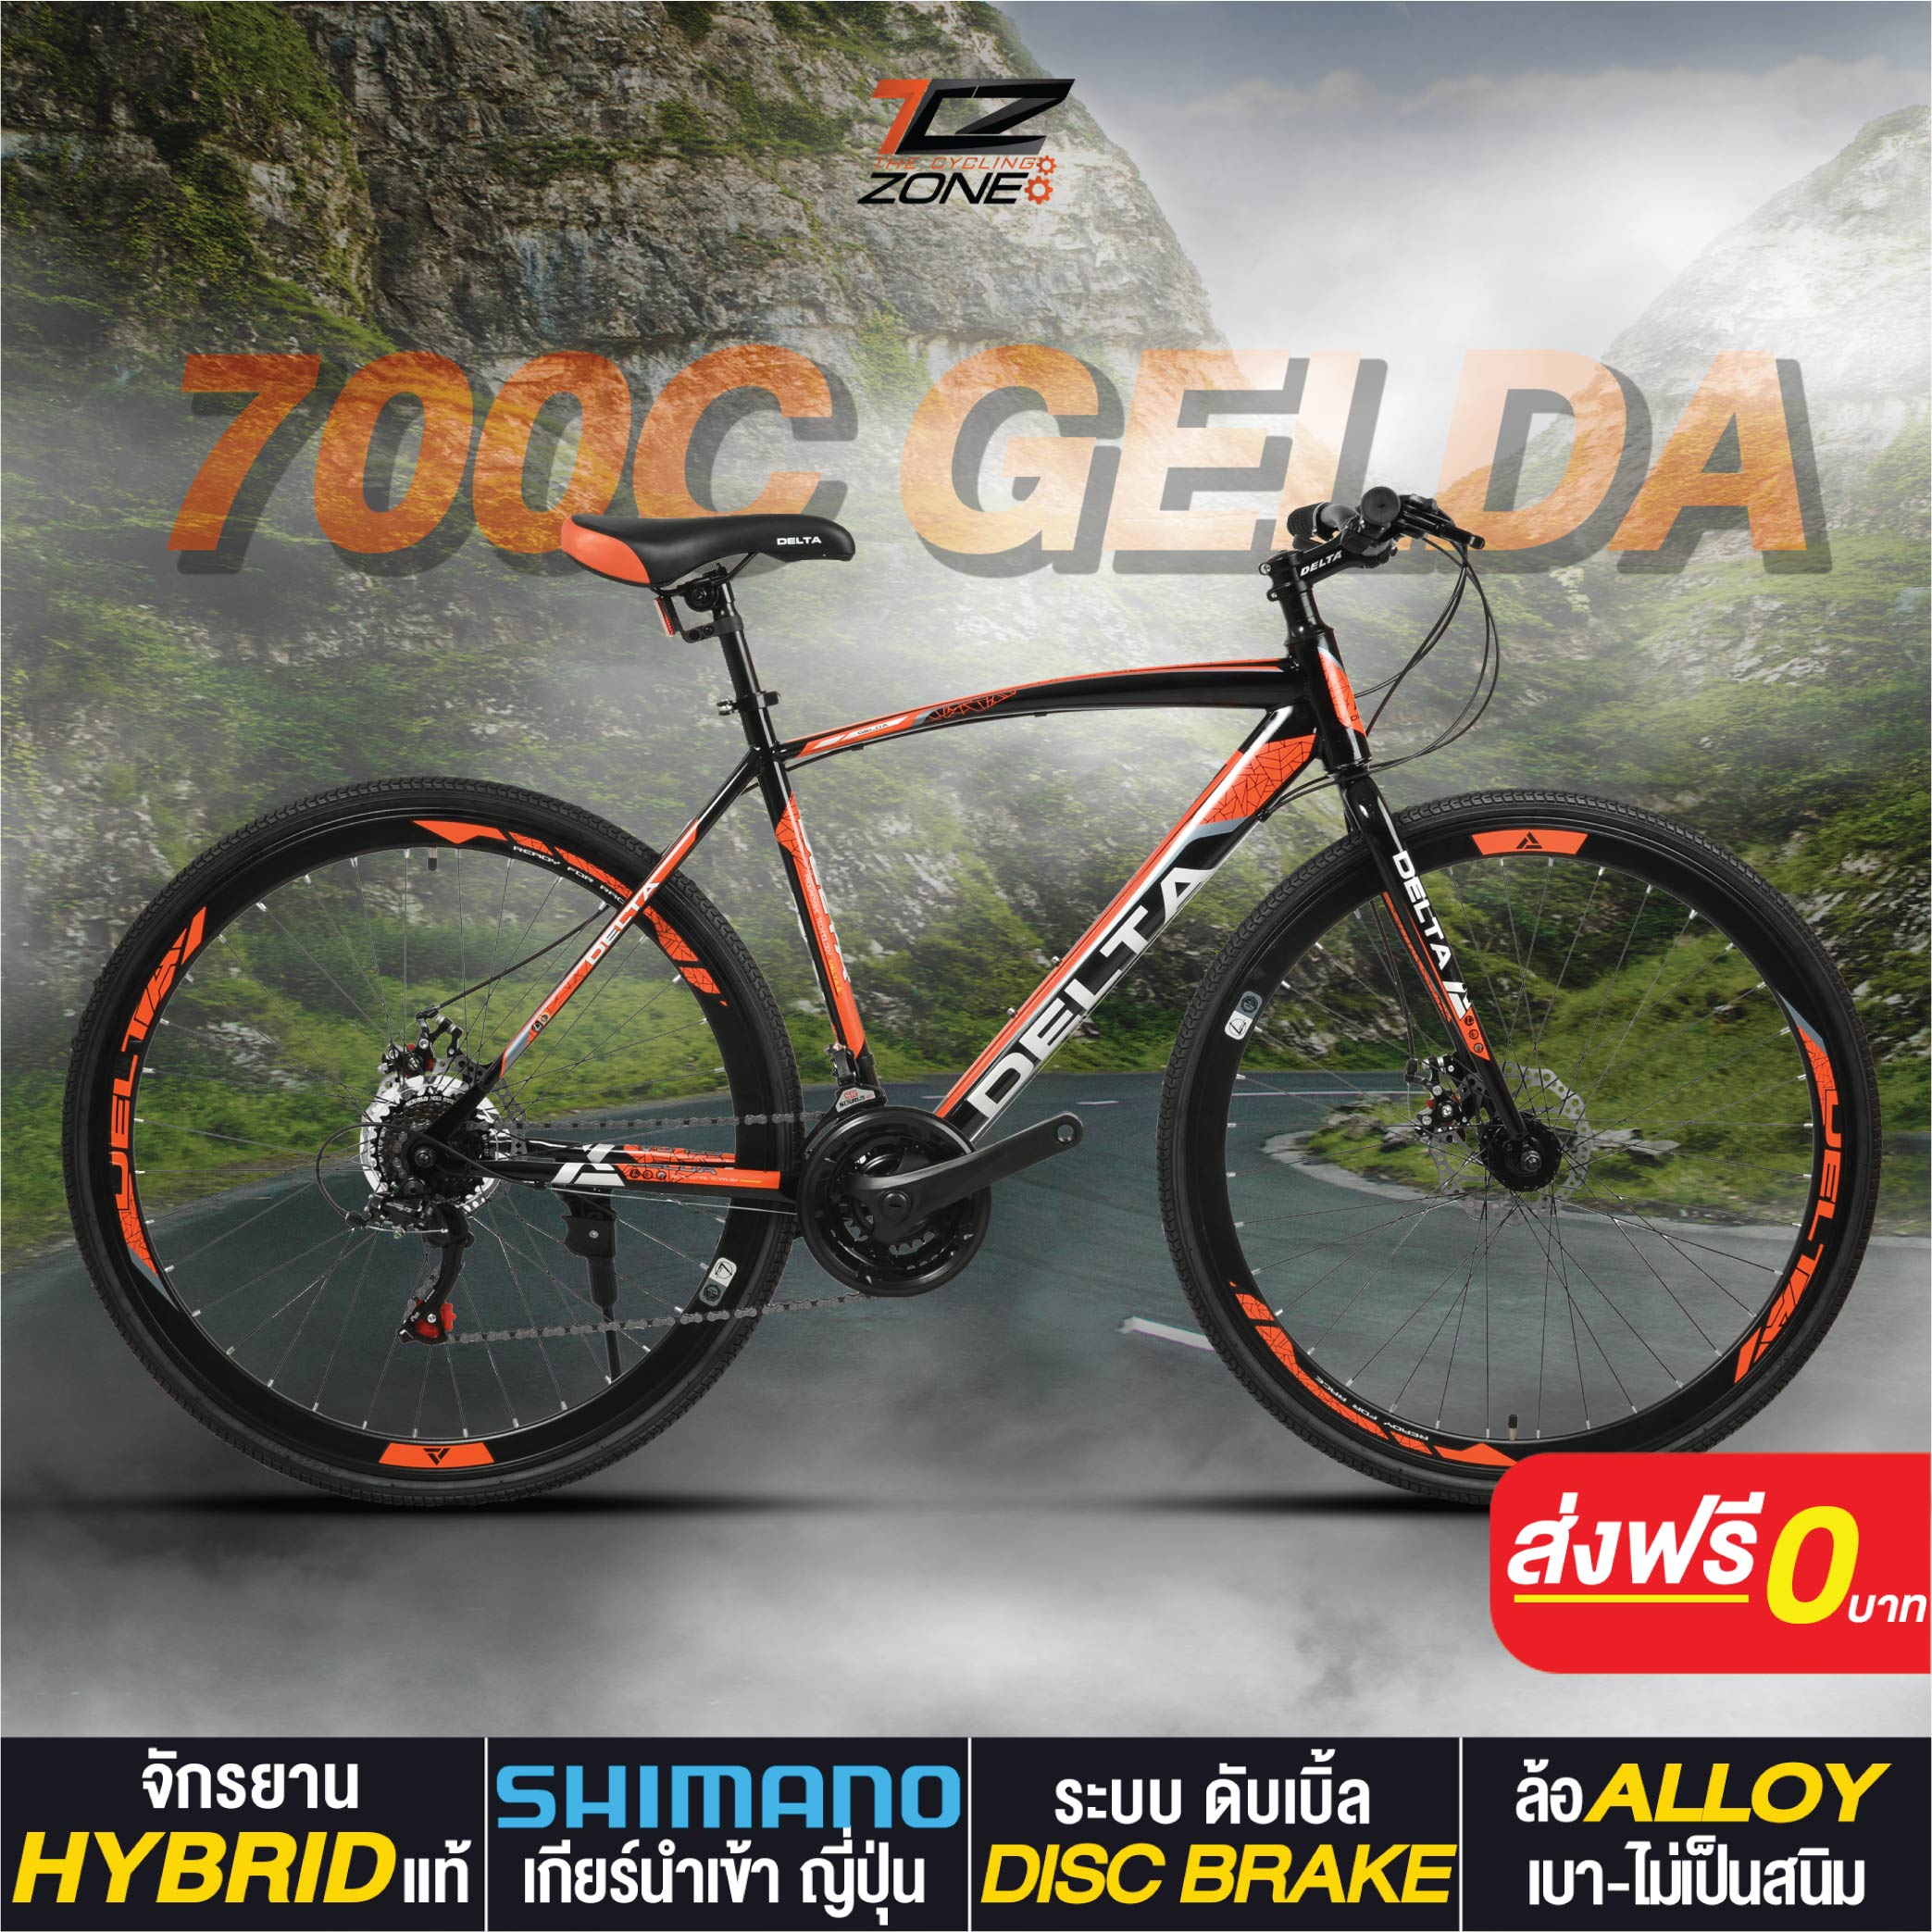 จักรยานไฮบริด 700C / DELTA เกียร์ SHIMANO 21 สปีด / ไซส์ 49 / รุ่น GELDA สีส้ม